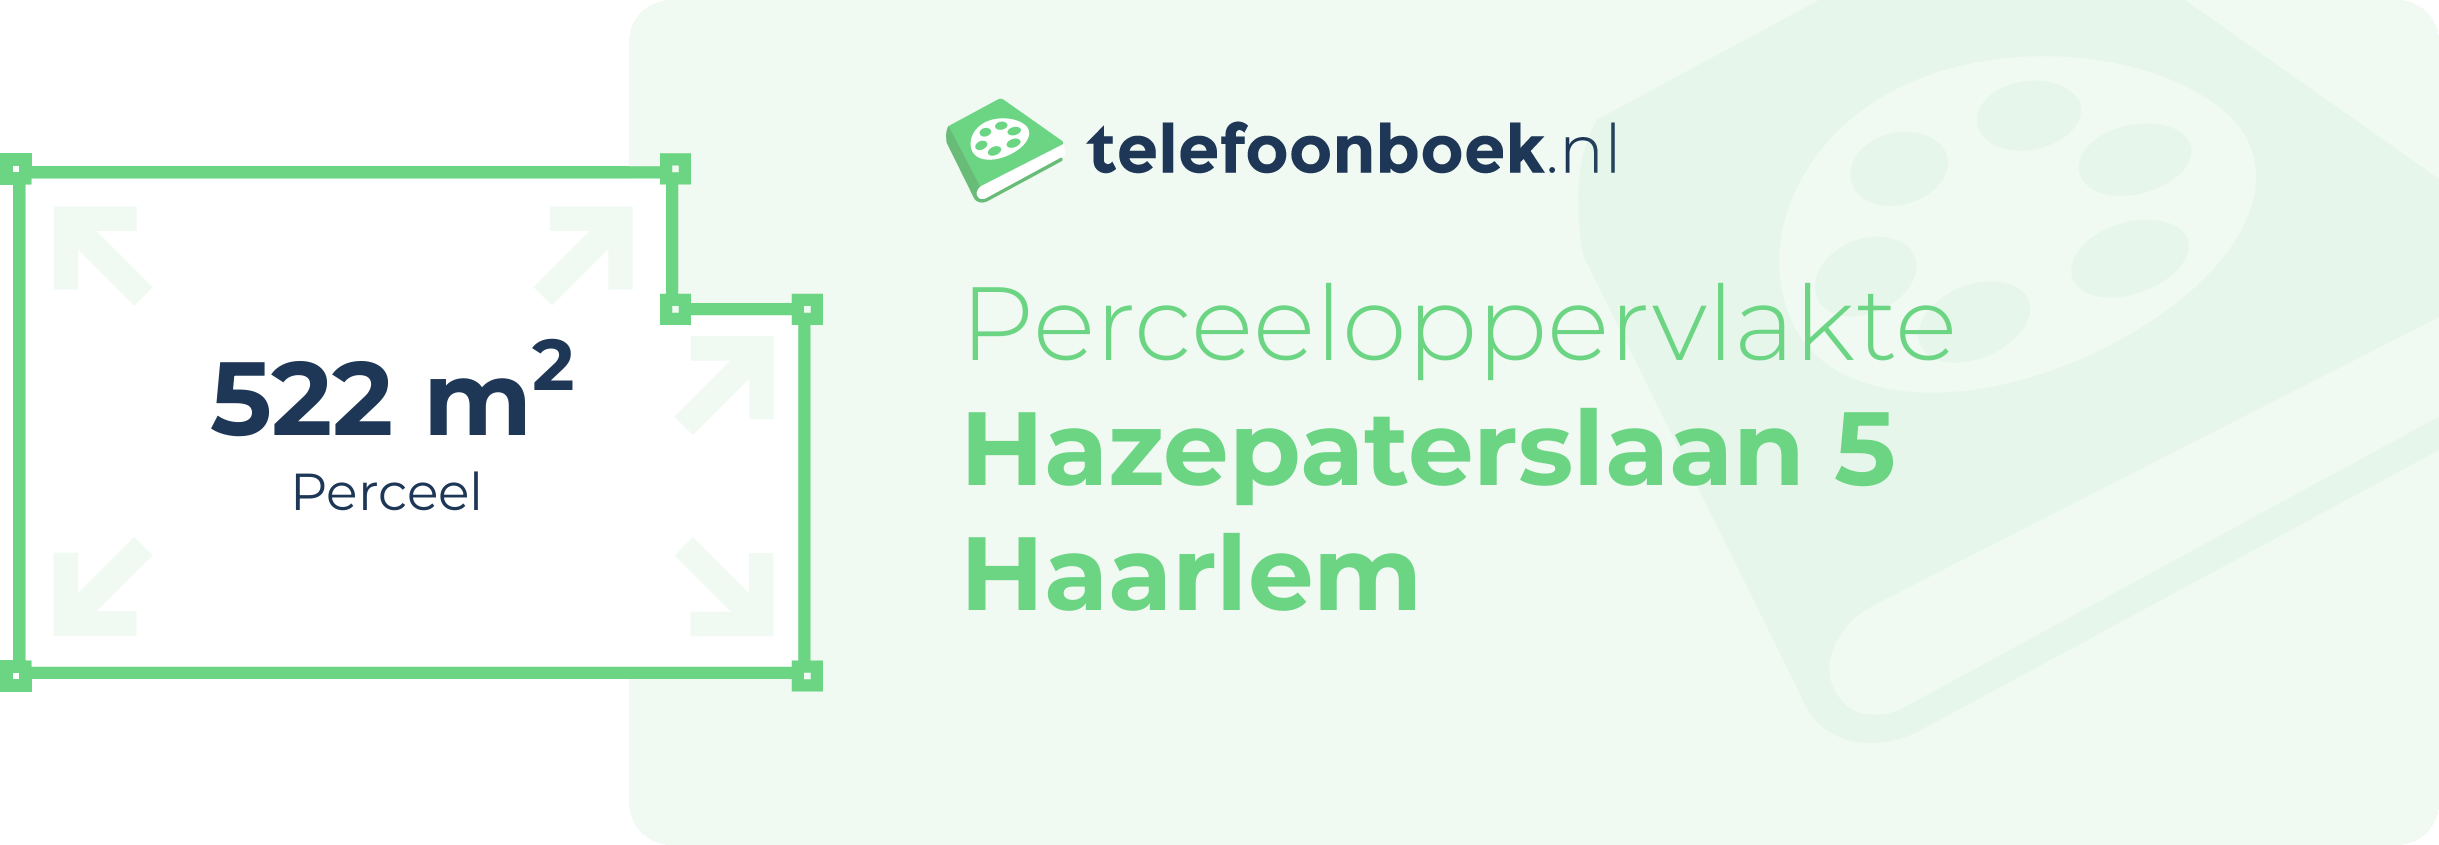 Perceeloppervlakte Hazepaterslaan 5 Haarlem